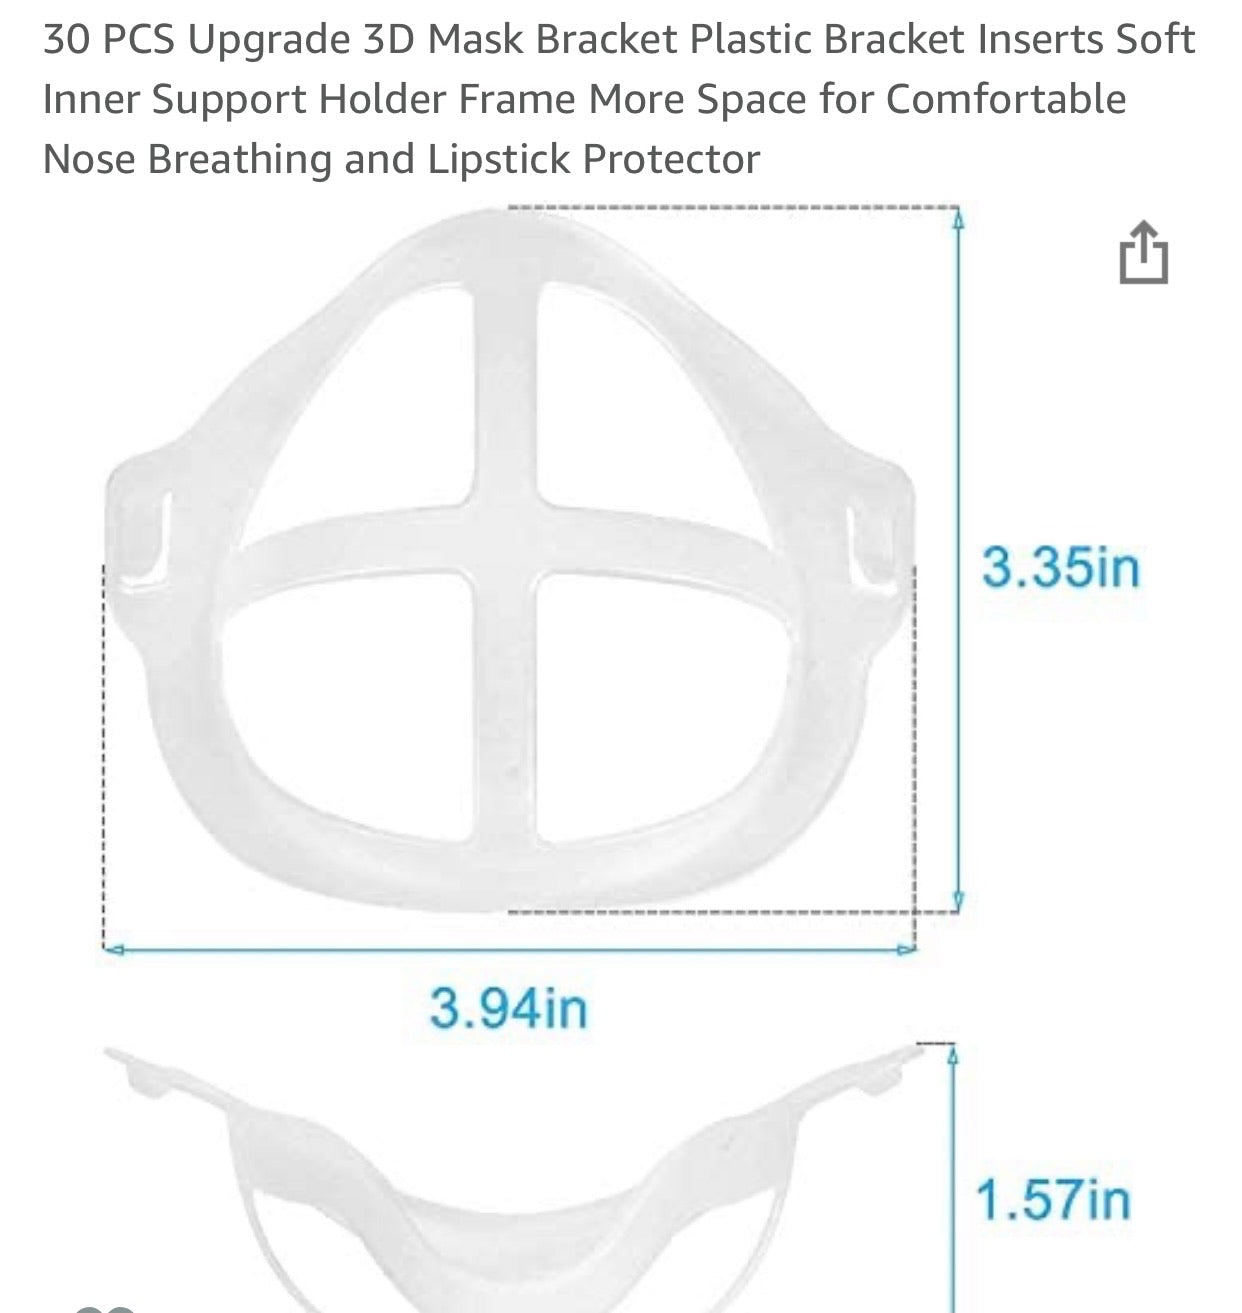 3D Reusable Mask Bracket Plastic Bracket - 3 Pack